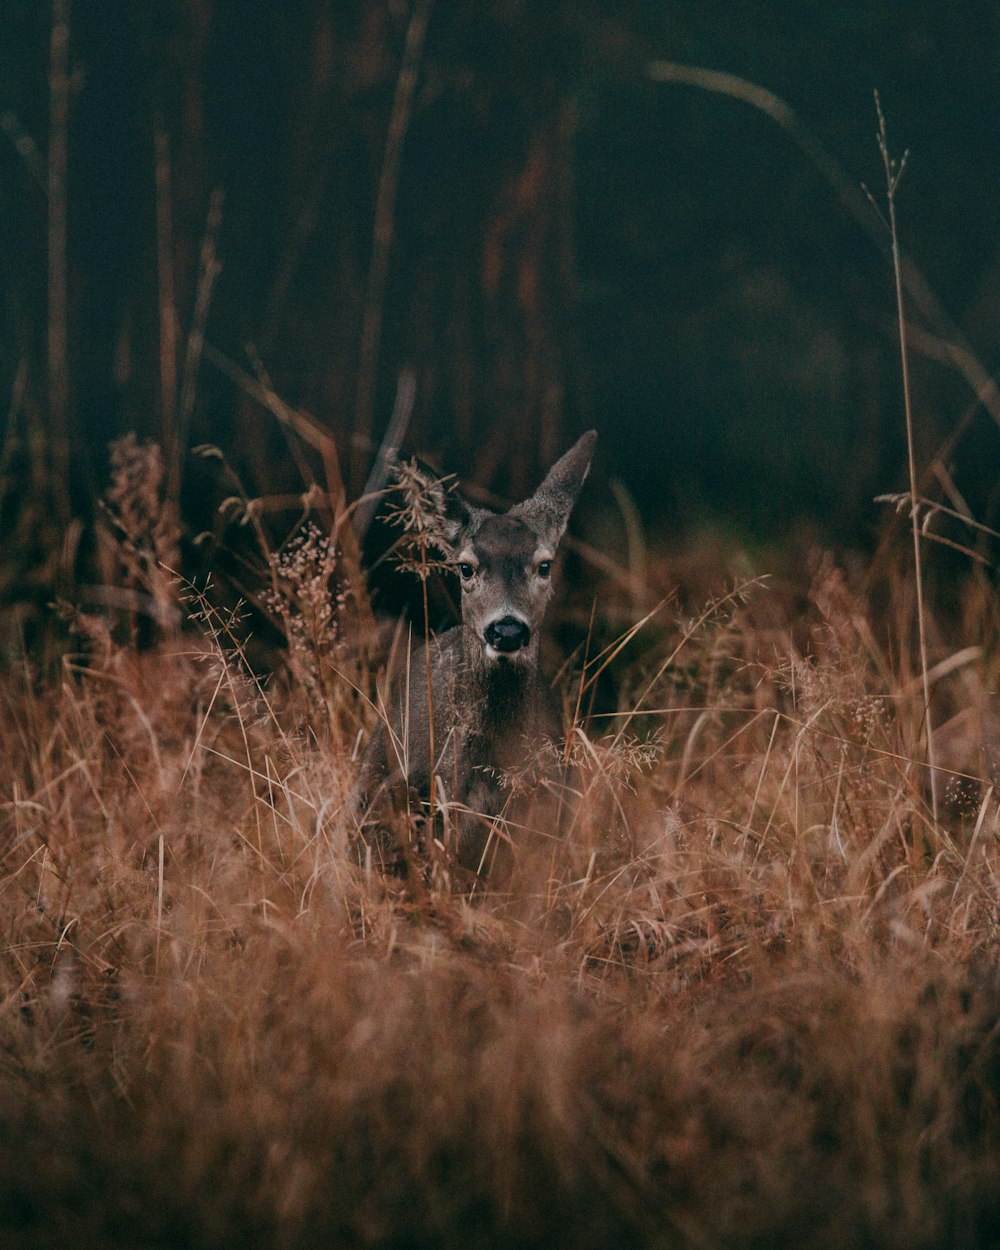 Fotografía de vida silvestre de ciervo gris rodeado de hierba